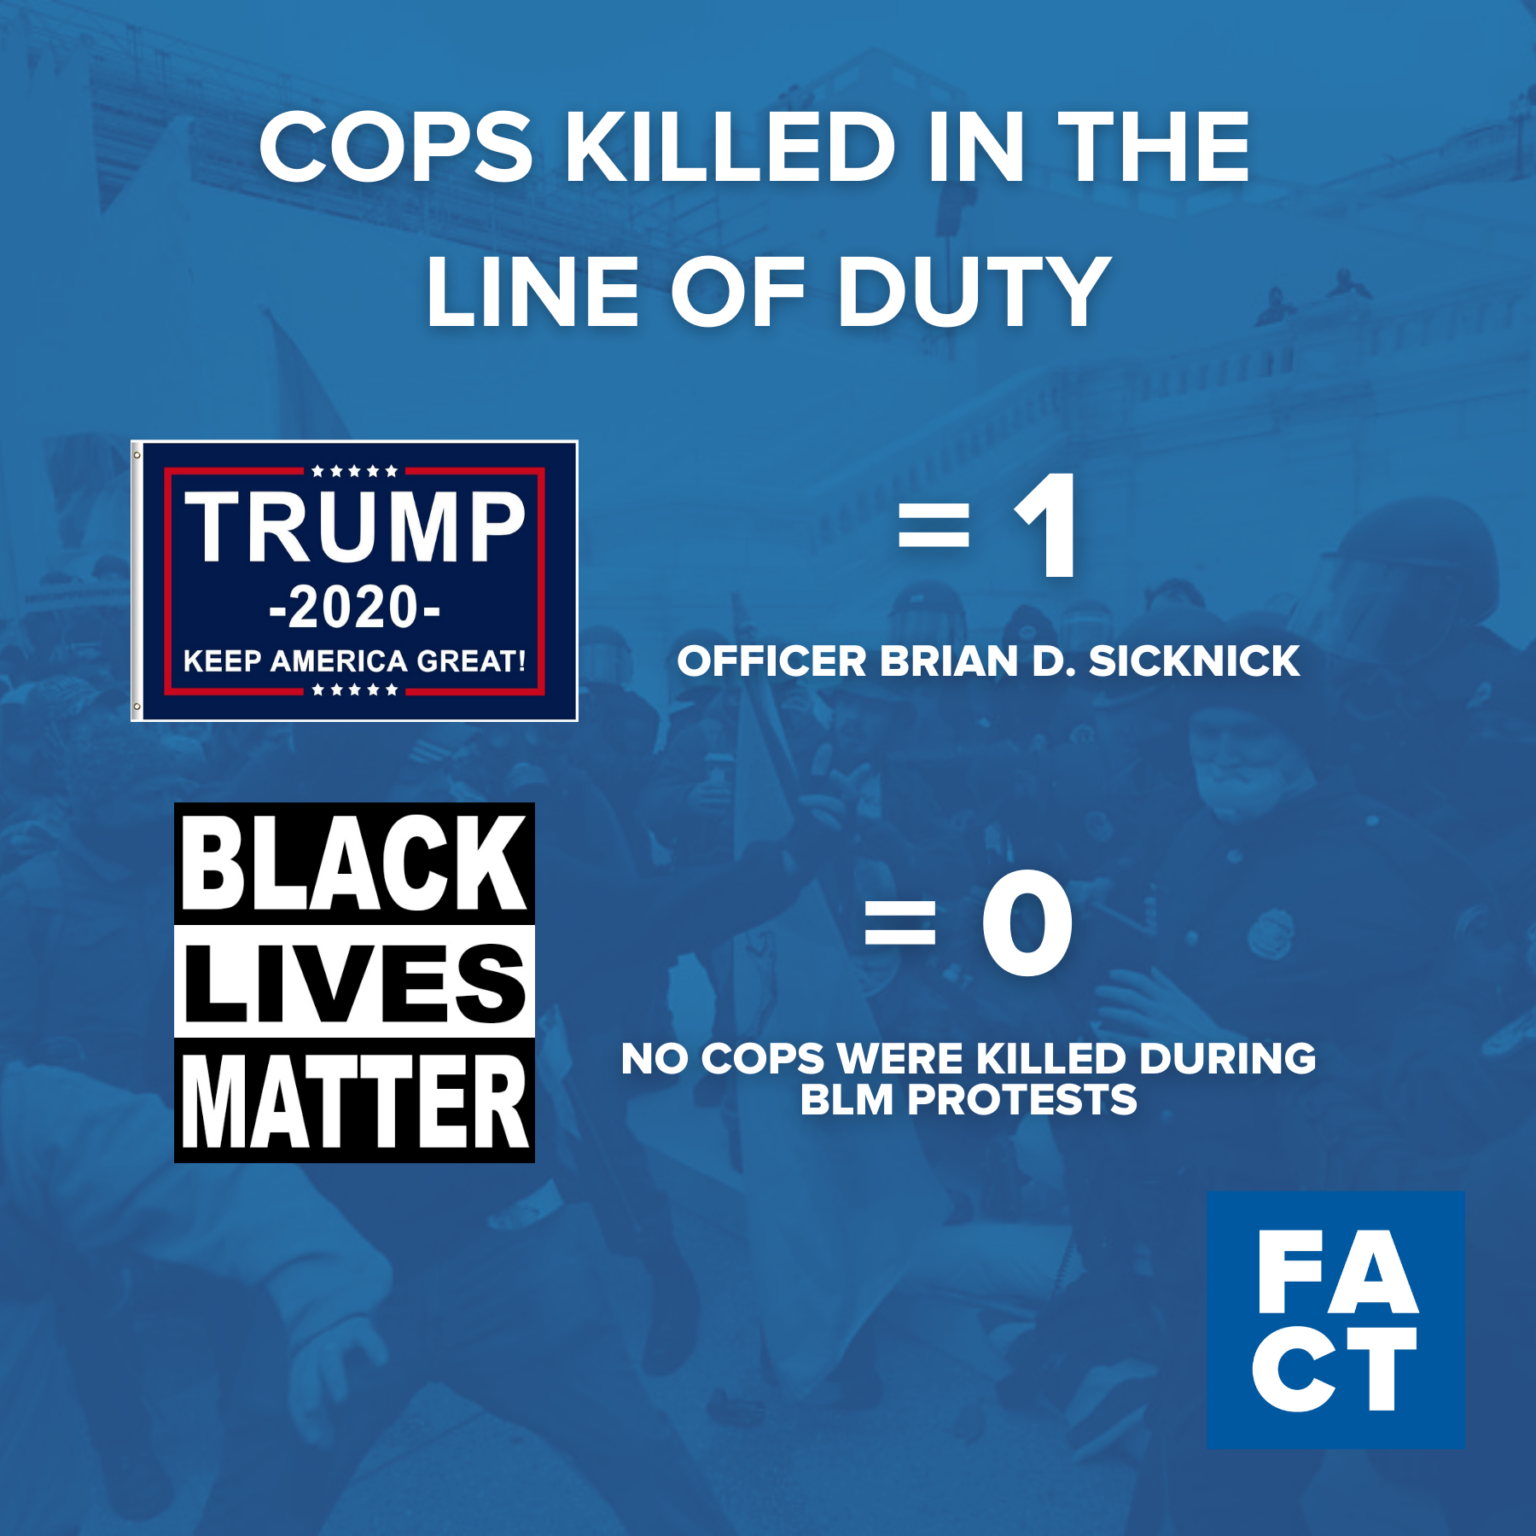 أدت أعمال الشغب التي قام بها ترامب إلى مقتل عدد من ضباط الشرطة أكثر من احتجاجات الأرواح السوداء